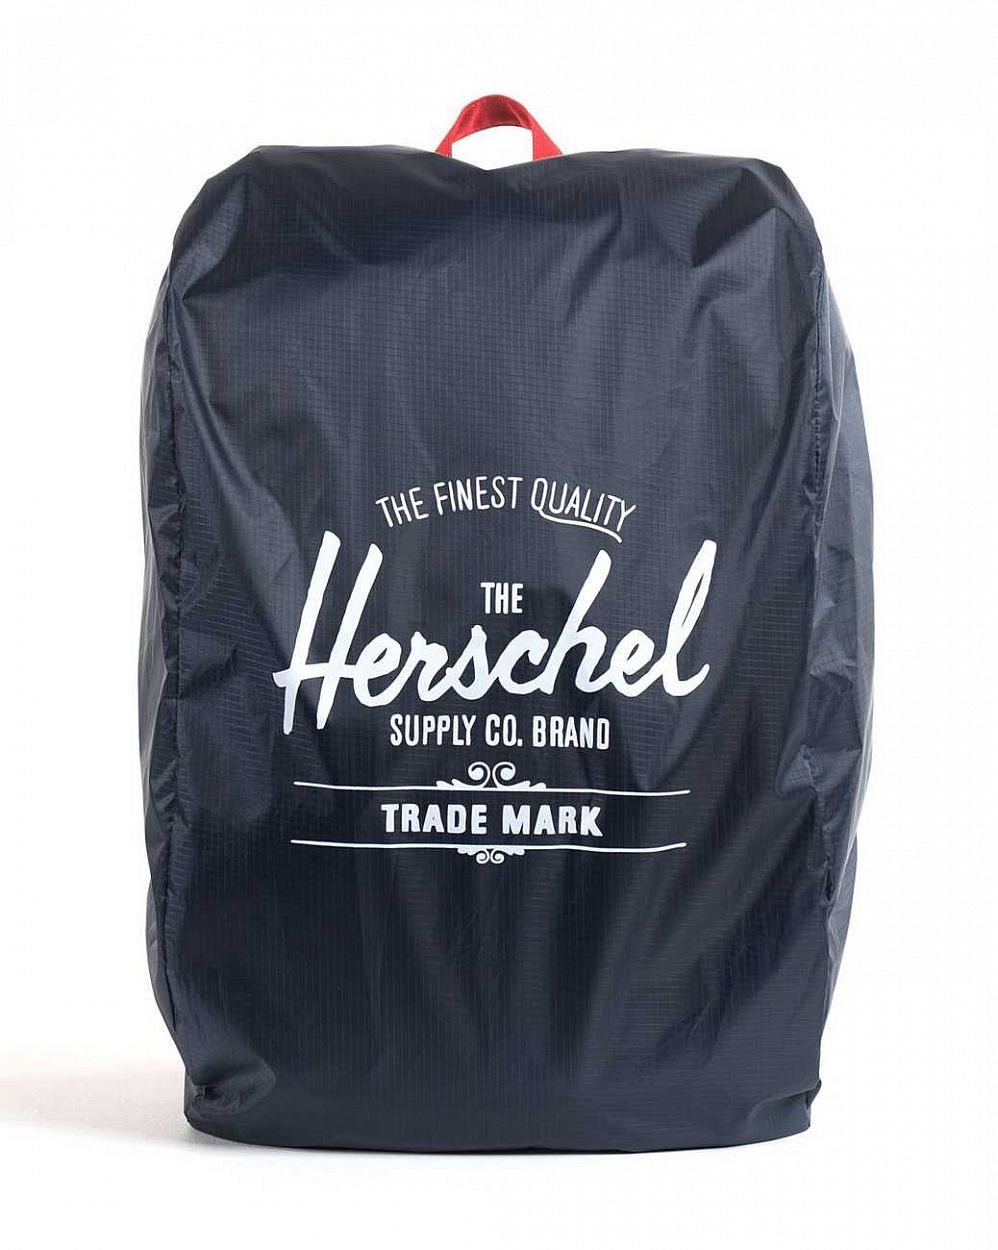 Непромокаемый чехол для рюкзака или сумки Herschel Packable Rain Cover Navy Red отзывы